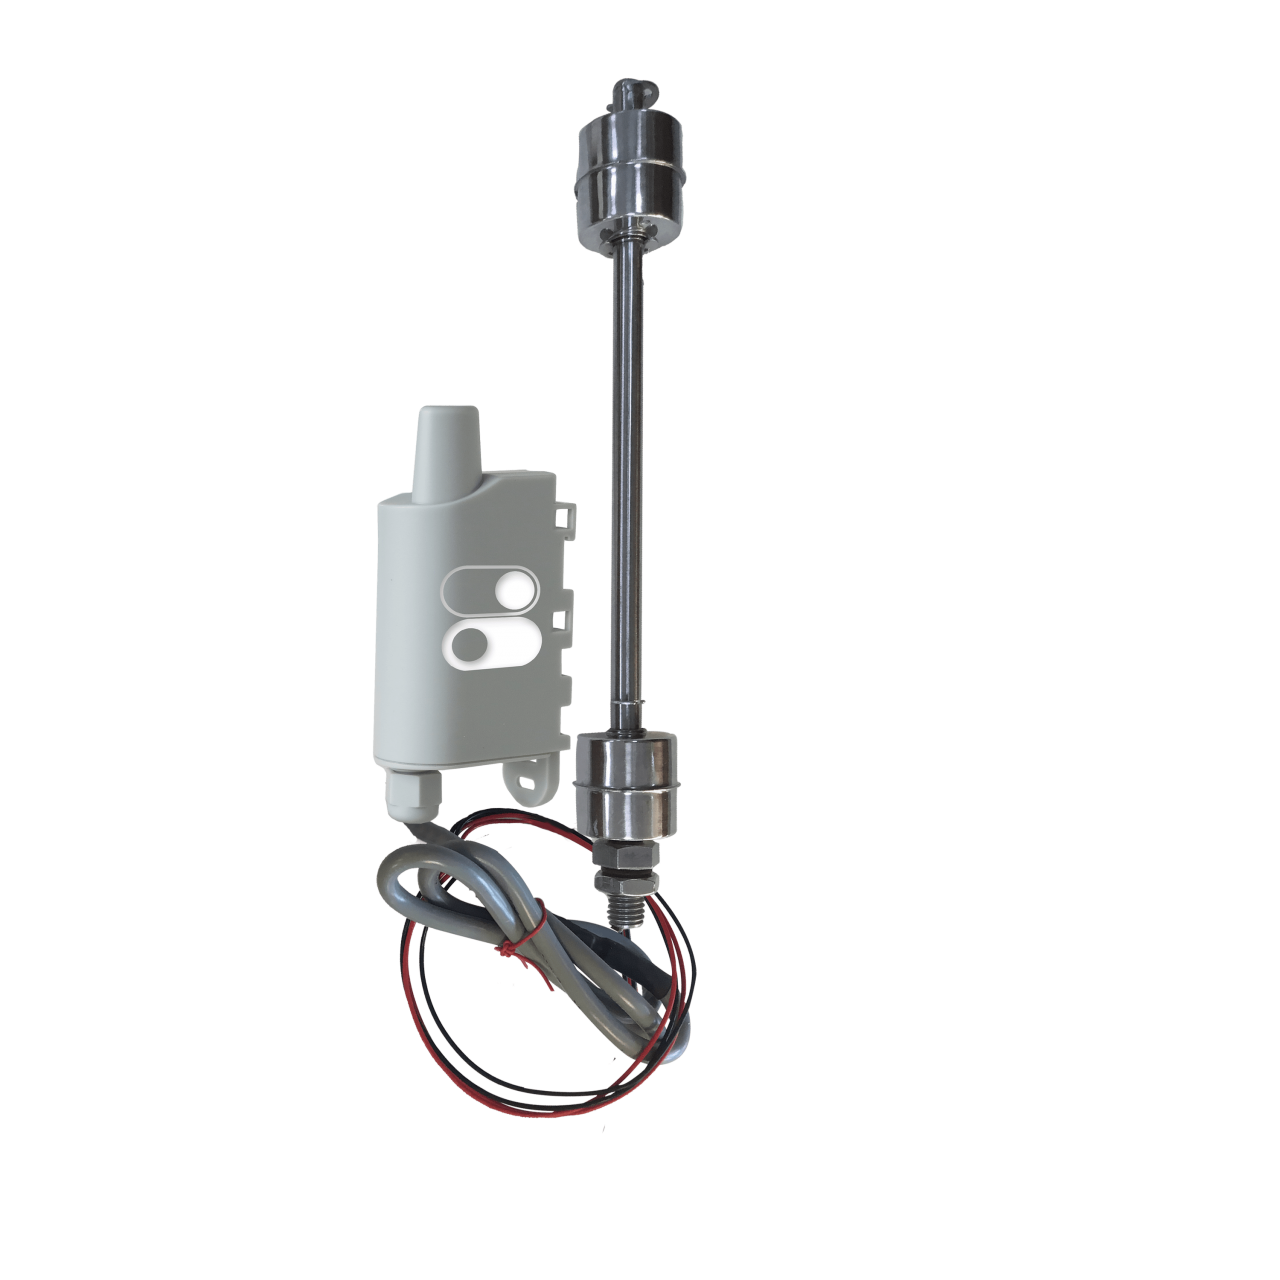 Transmetteur IoT Package : Double Level Sensor: Détecter le niveau d'eau d'une cuve avec sa sonde performante